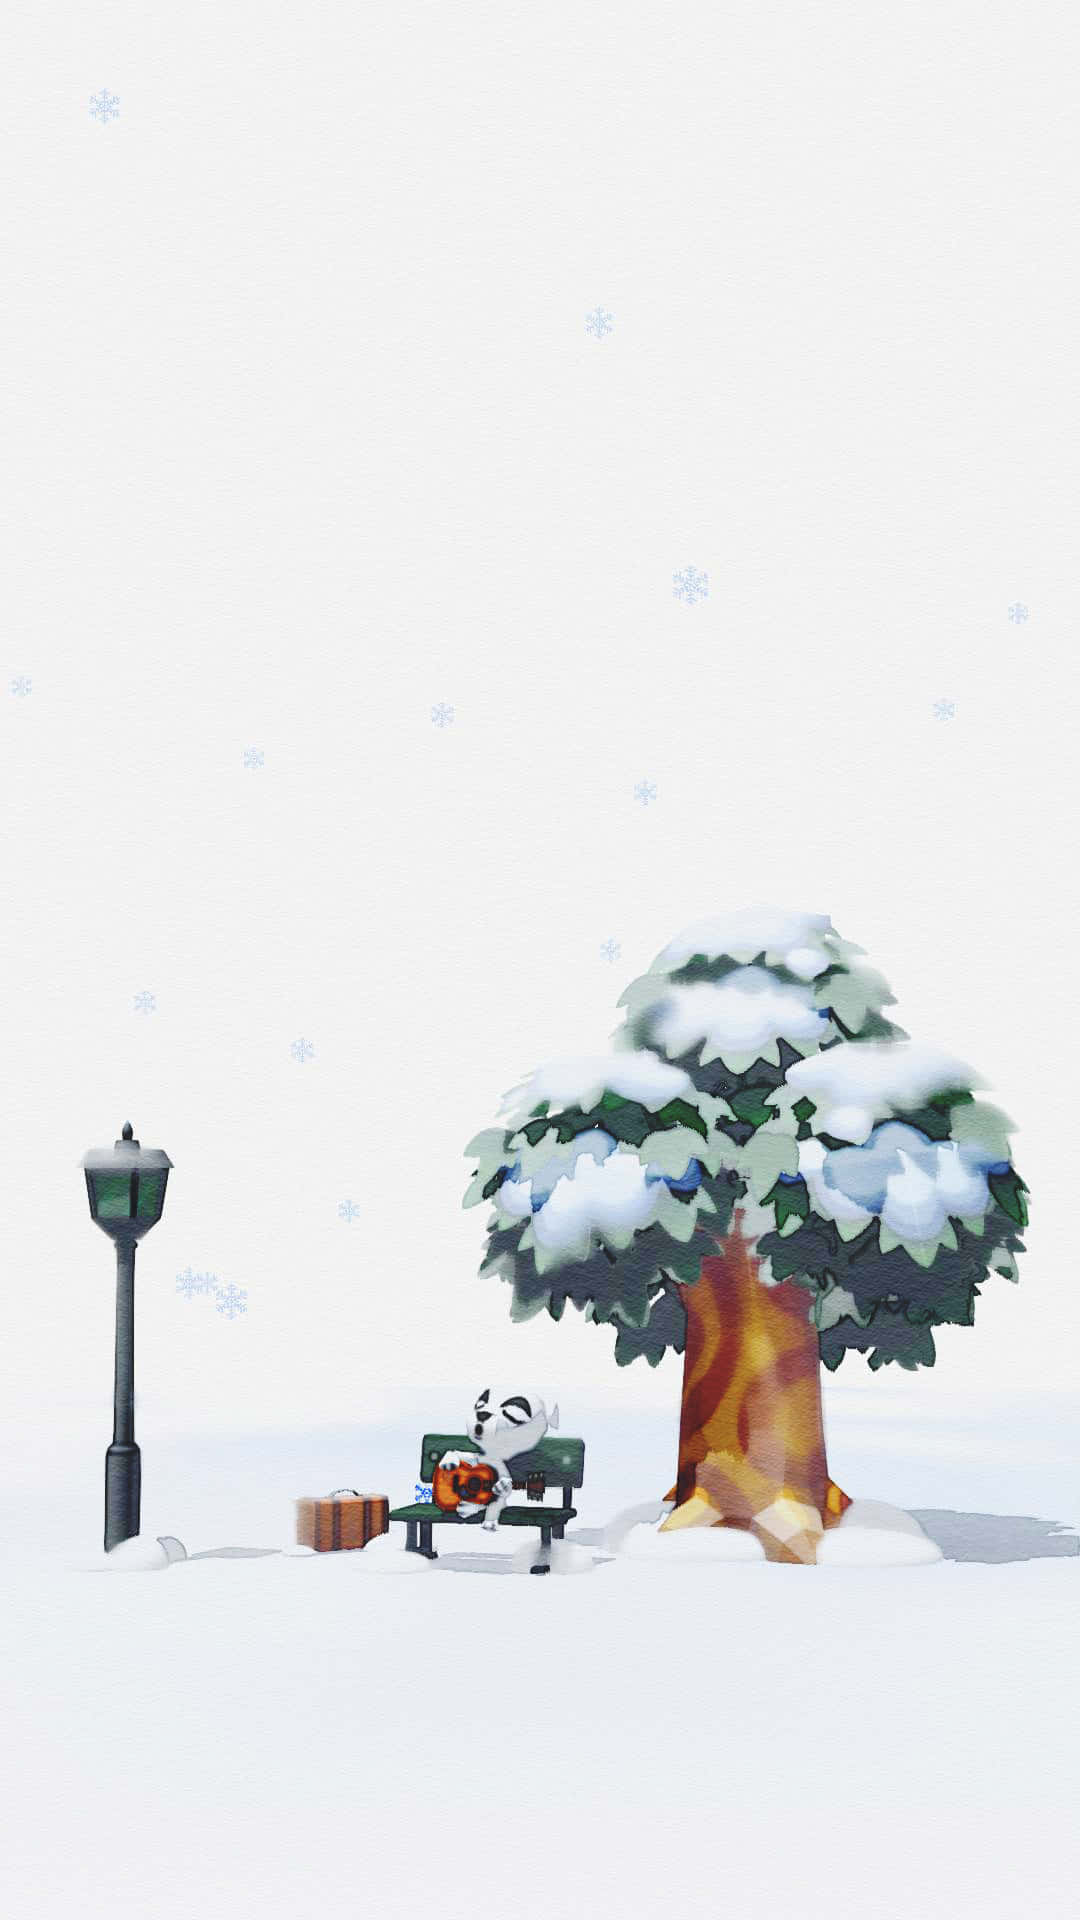 'upplevmagin Av Animal Crossing Vinter' Wallpaper